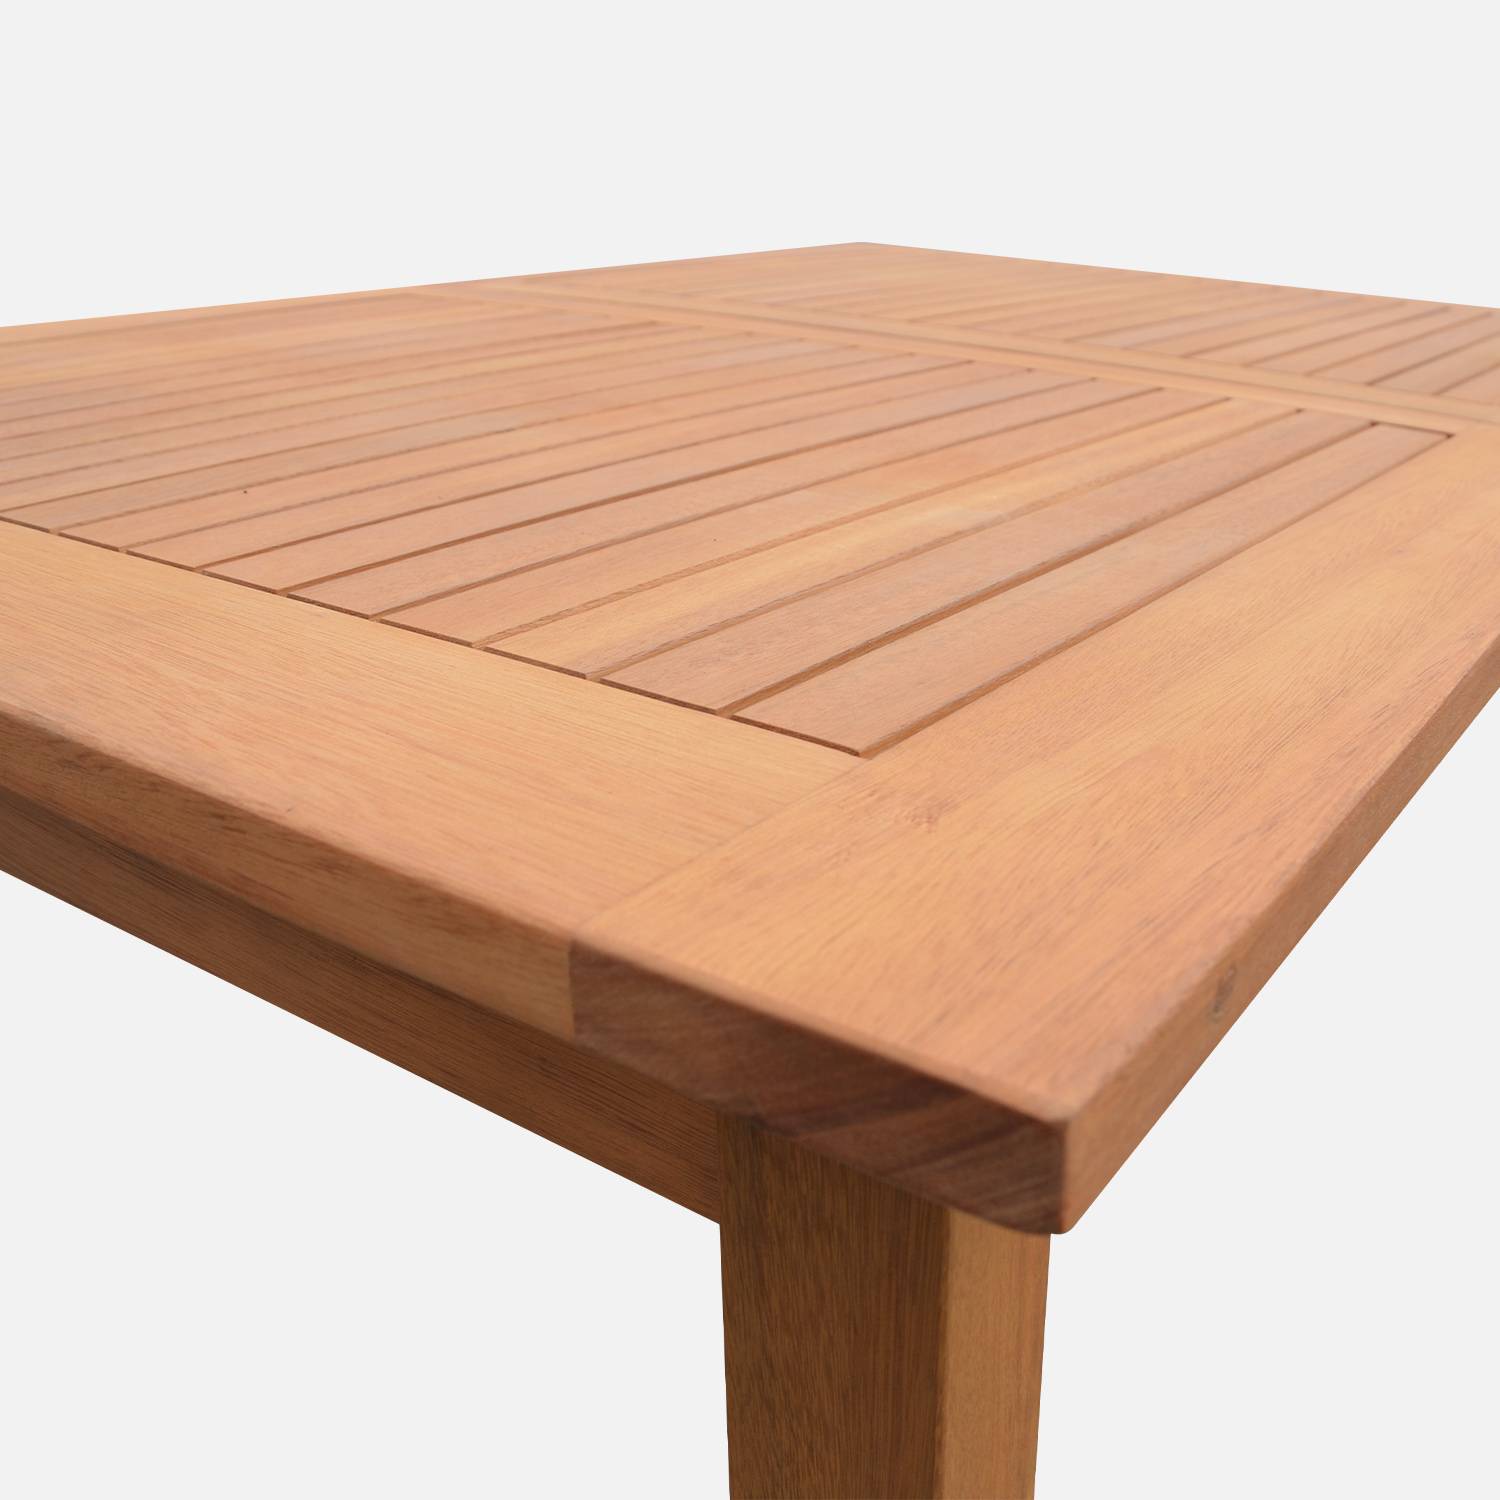 Tavolo da giardino in legno, dimensioni: 200-250-300cm - modello: Almeria - Grande tavolo rettangolare con prolunga, in eucalipto FSC Photo9